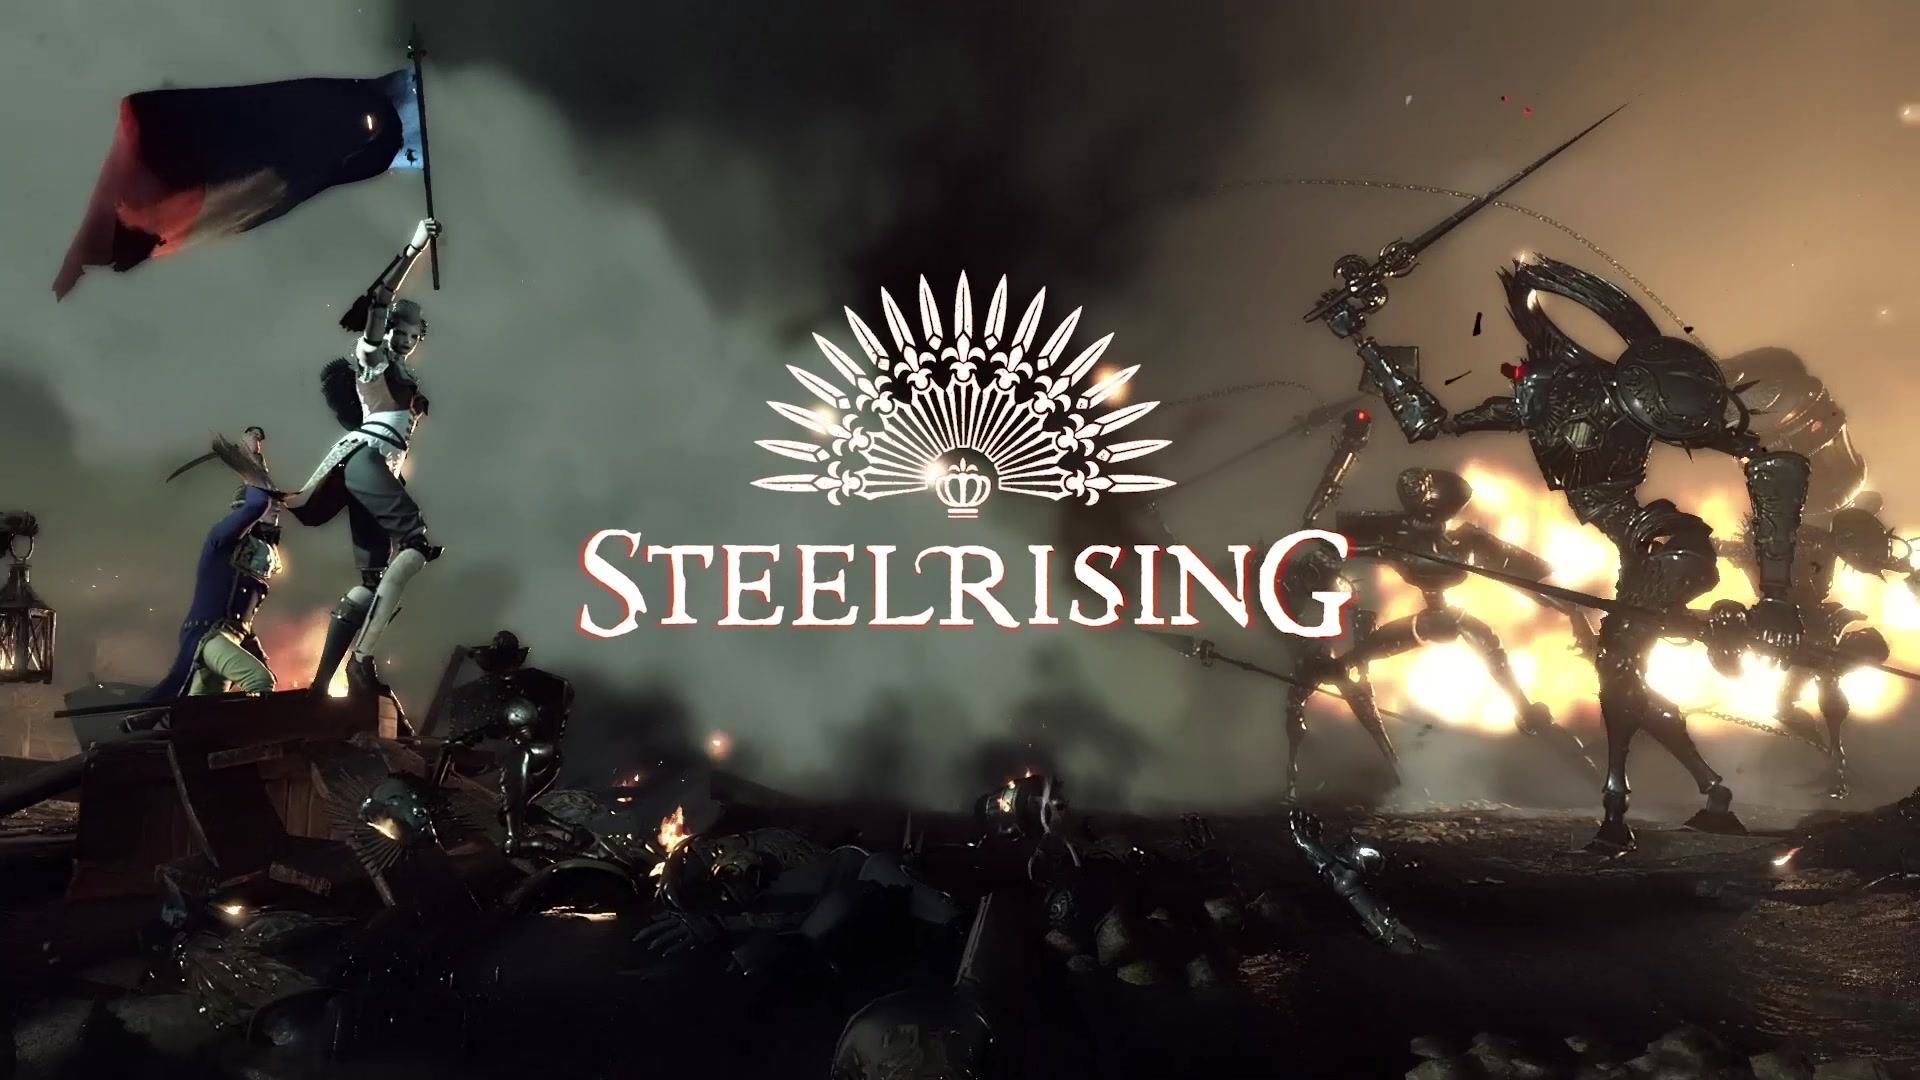 نمایش مبارزات و باس فایت در تریلر جدید بازی Steelrising